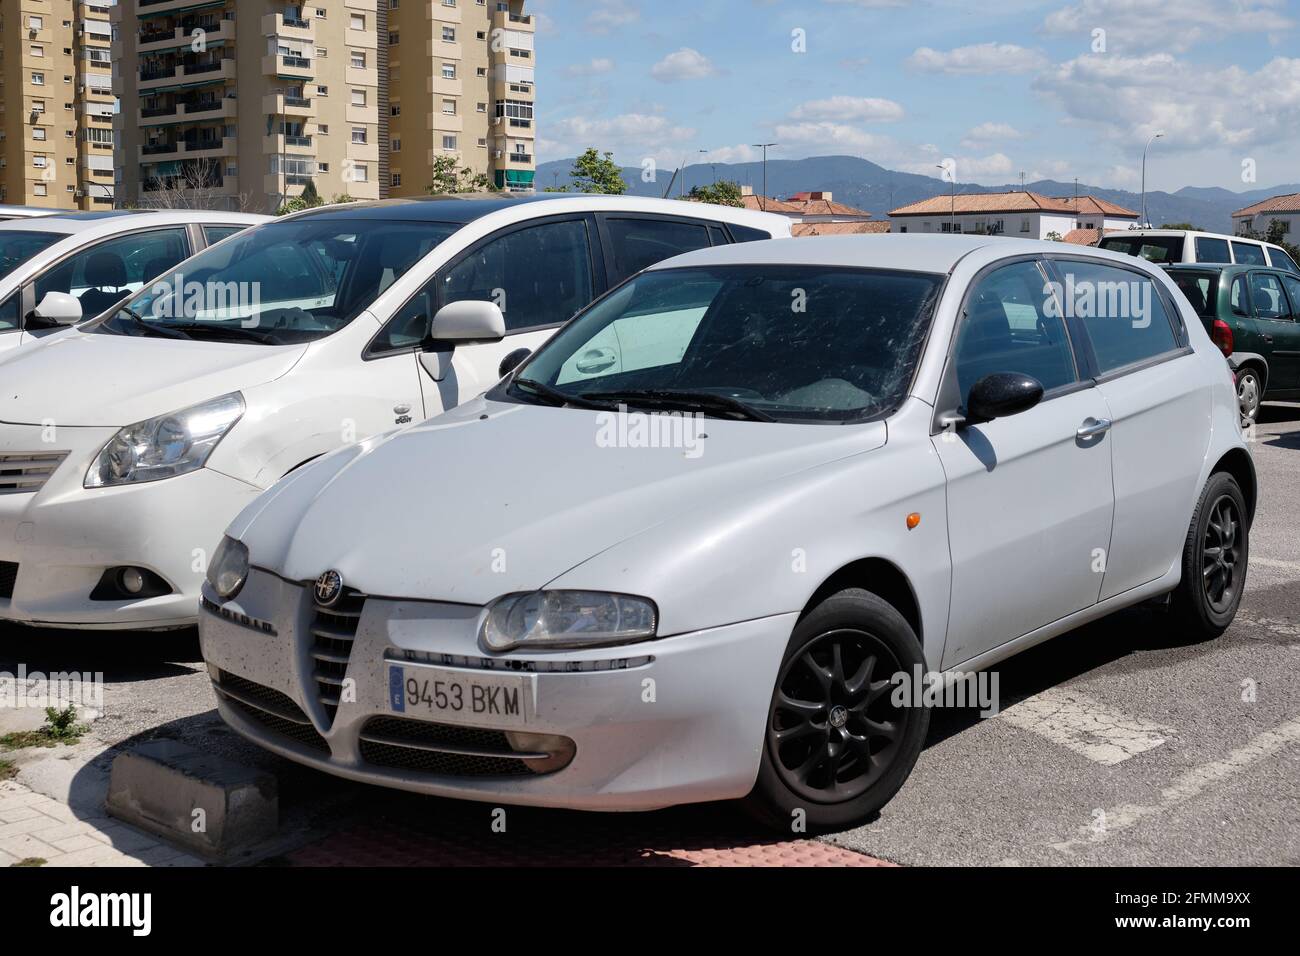 2001 Alfa Romeo 147 parked in Malaga, Spain. Stock Photo